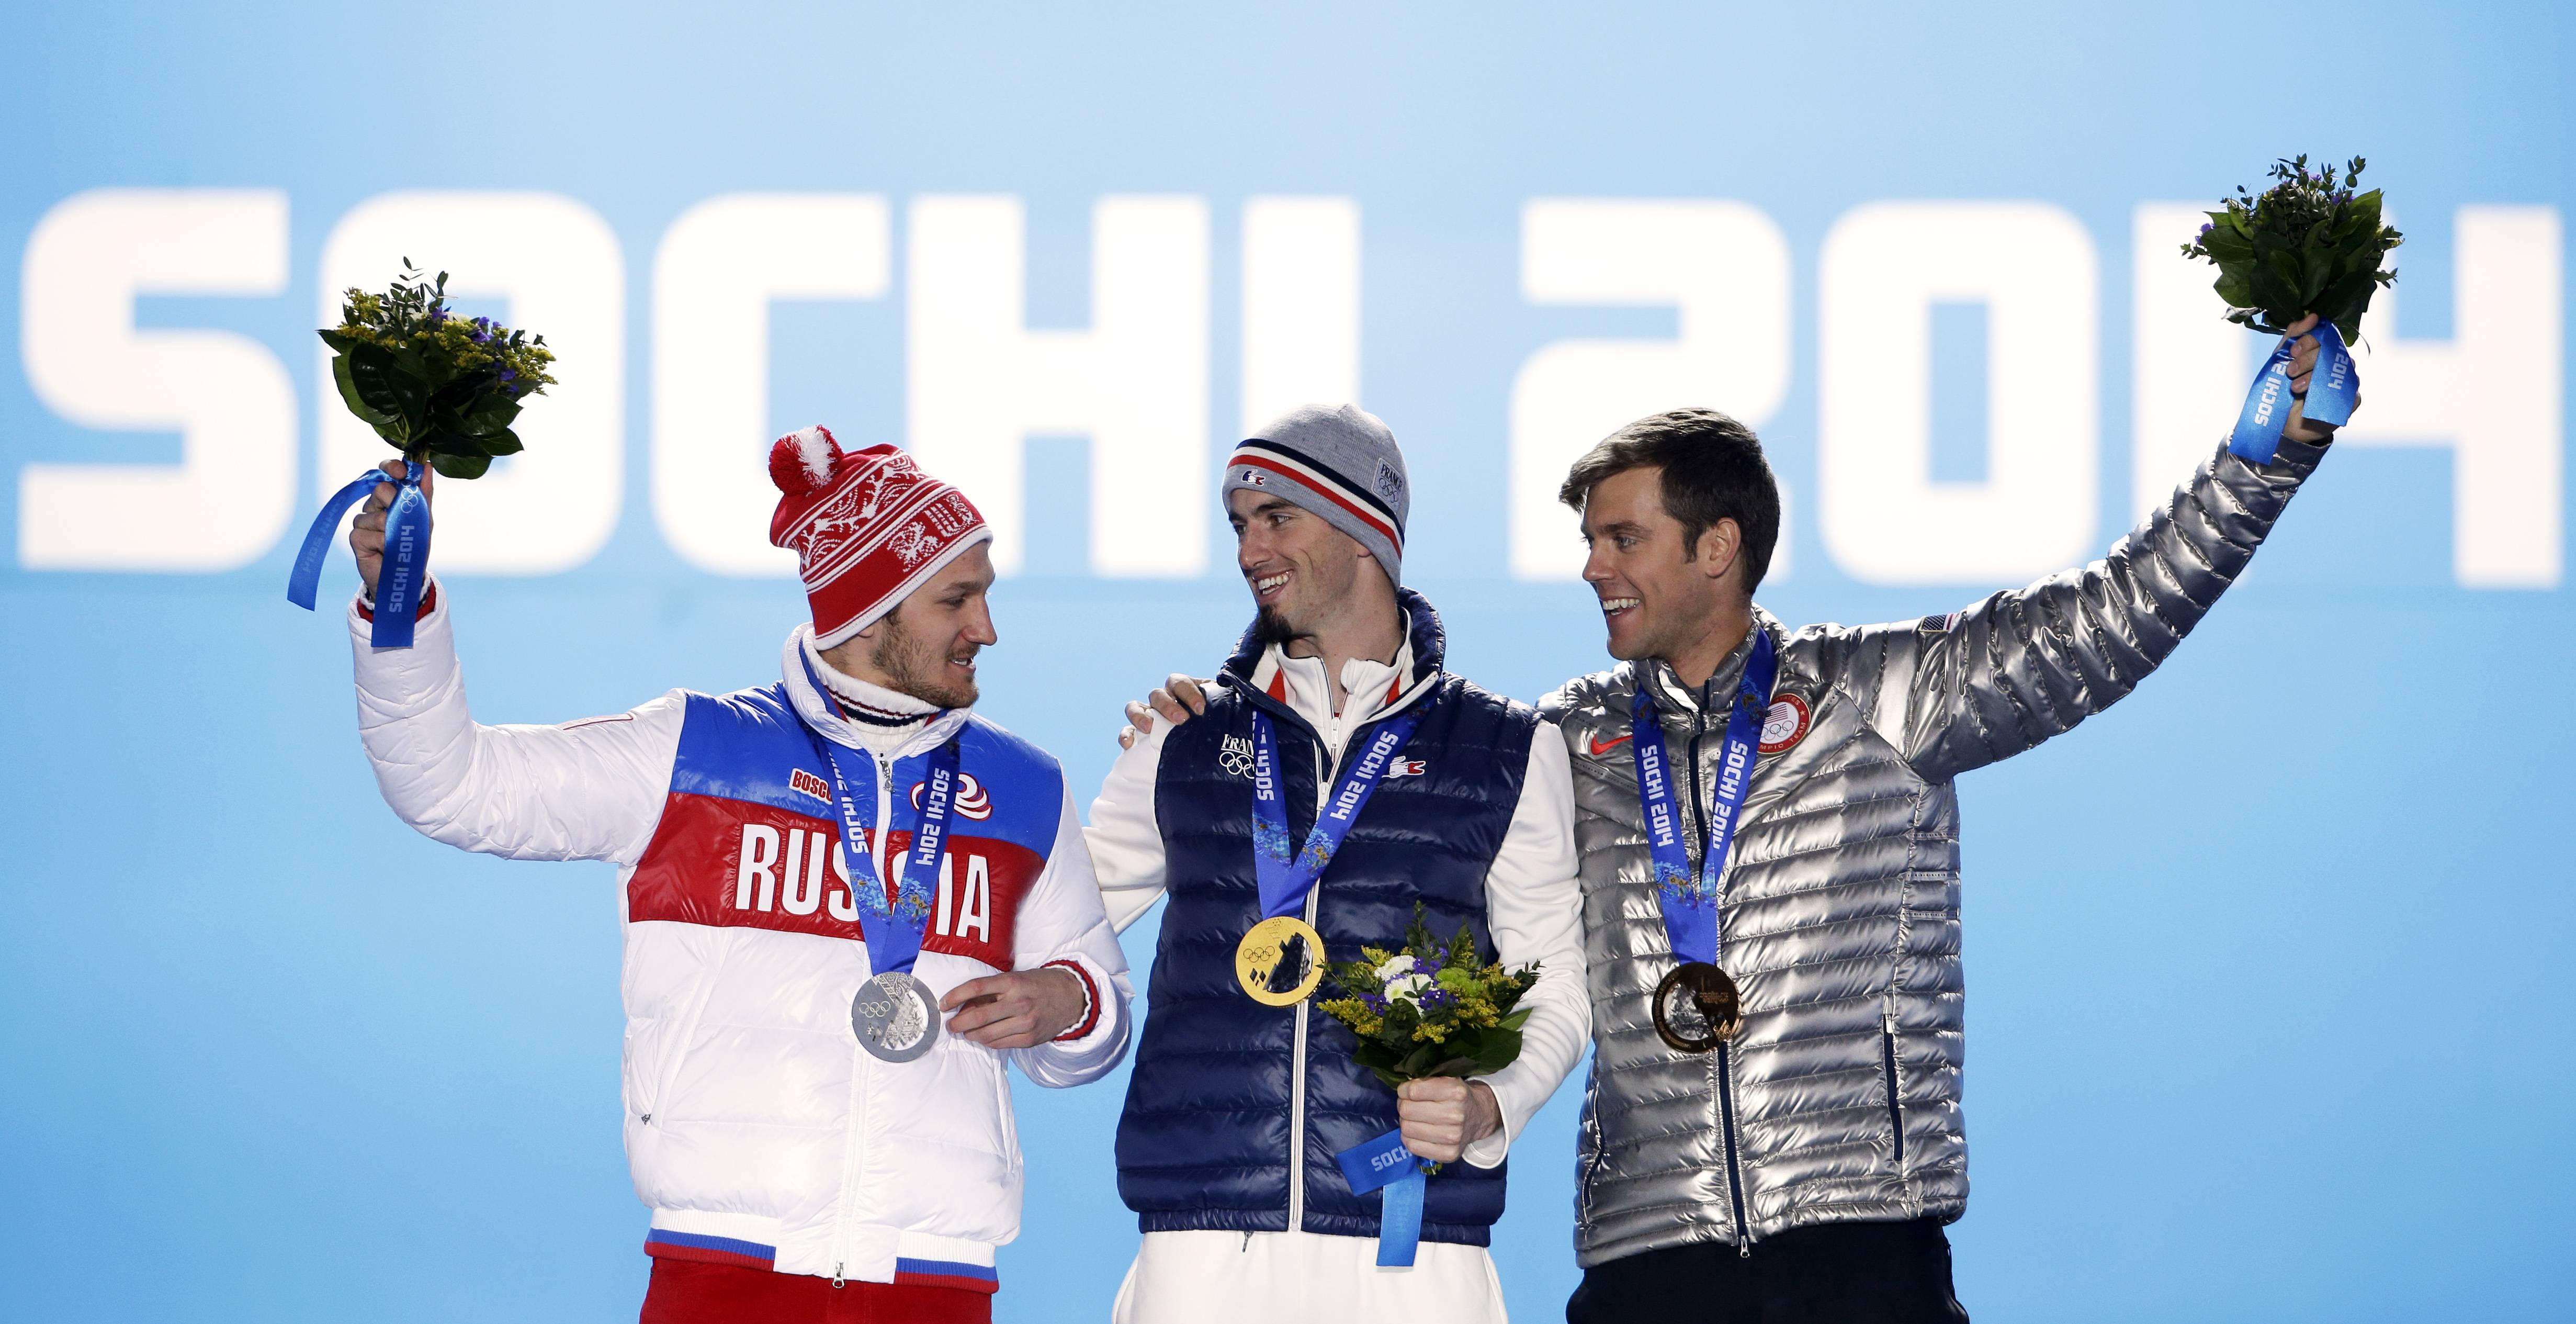 Медалей зимних олимпийских игр 2014. Сочи 2014. Олимпийские награды Сочи 2014.